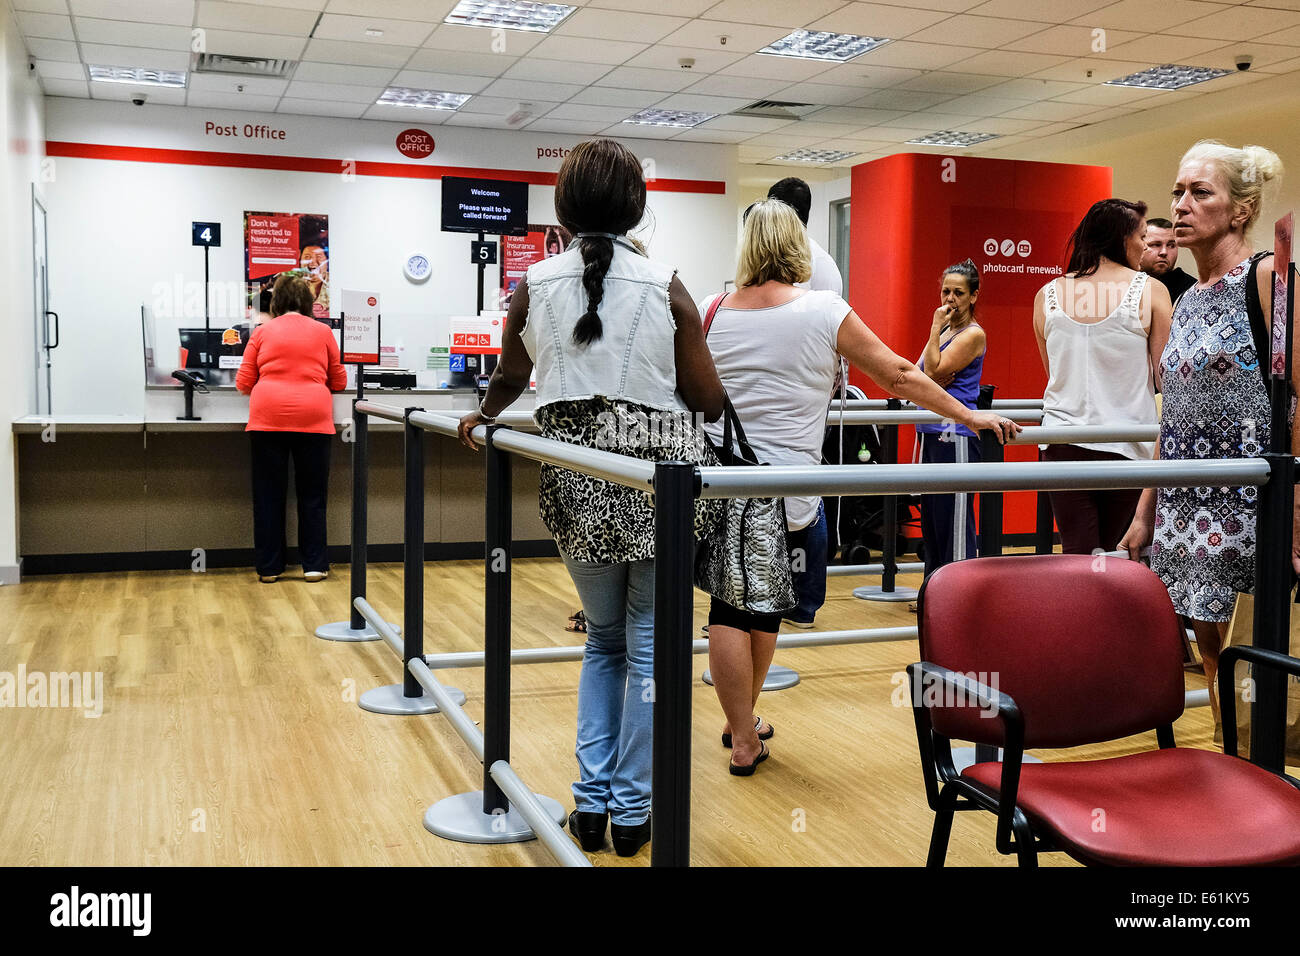 Les clients du patient la queue dans un bureau de poste. Banque D'Images